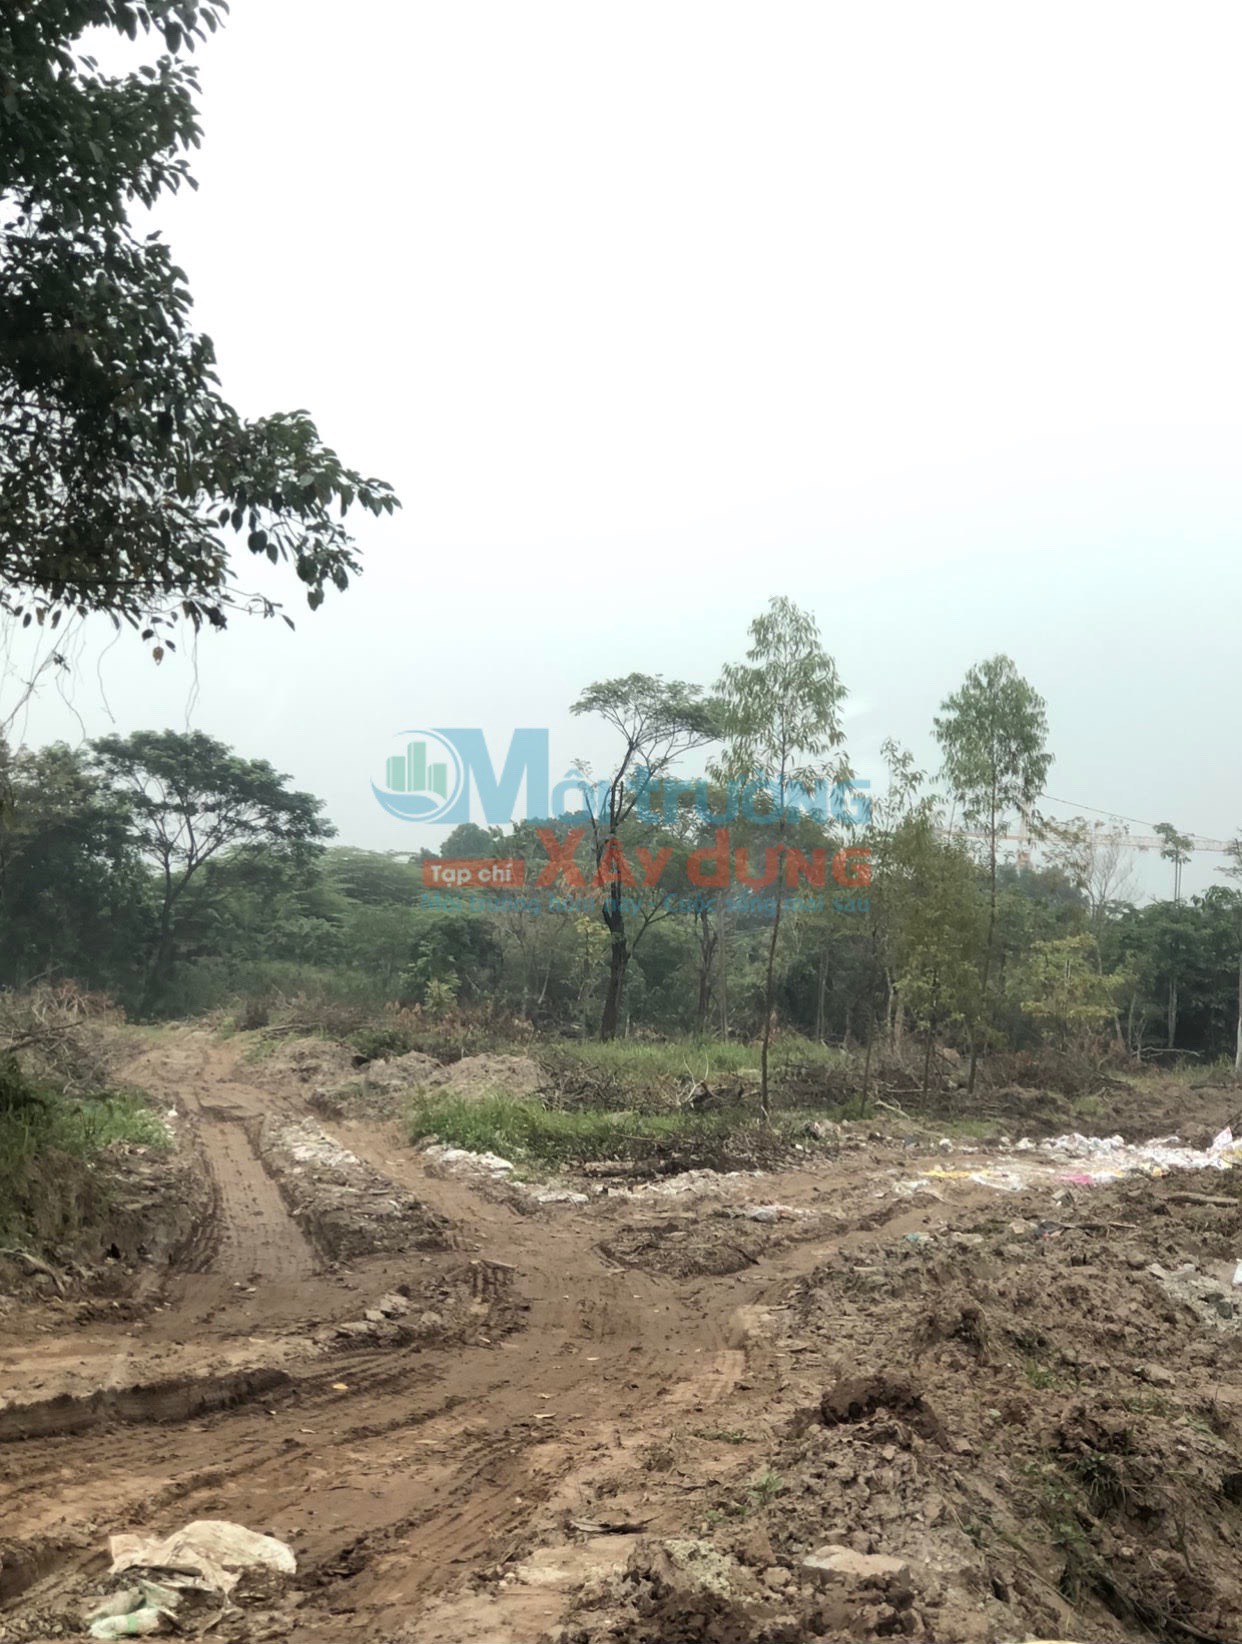 Huyện Văn Giang – Hưng Yên: Chưa đủ pháp lý, Tập đoàn Ecopark đã vội huy động vốn tại Dự án Meraki Residences?